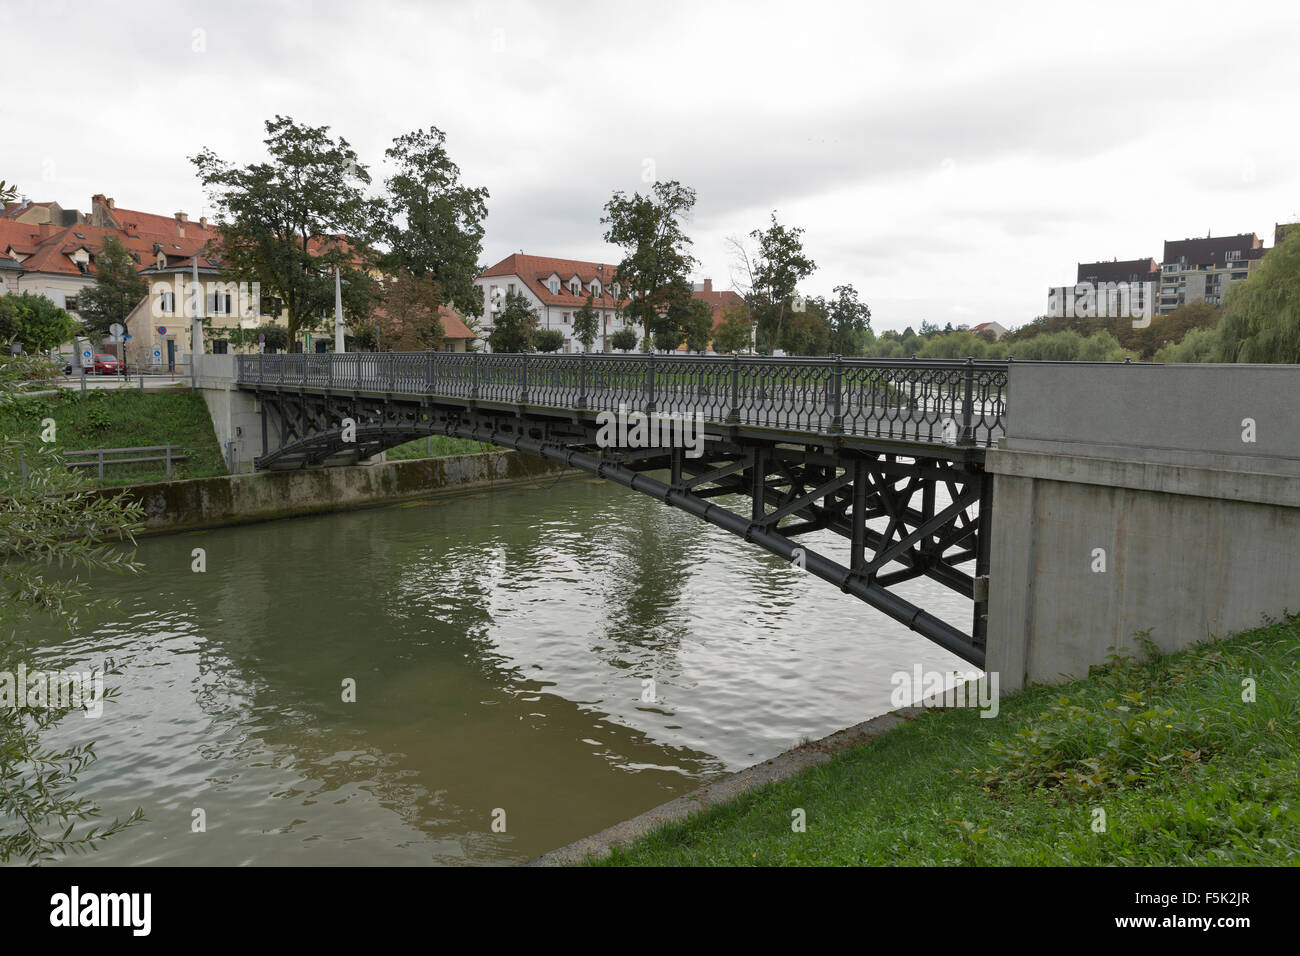 Hradeckega passerella sul fiume Ljubljanica a Ljubljana, Slovenia Foto Stock